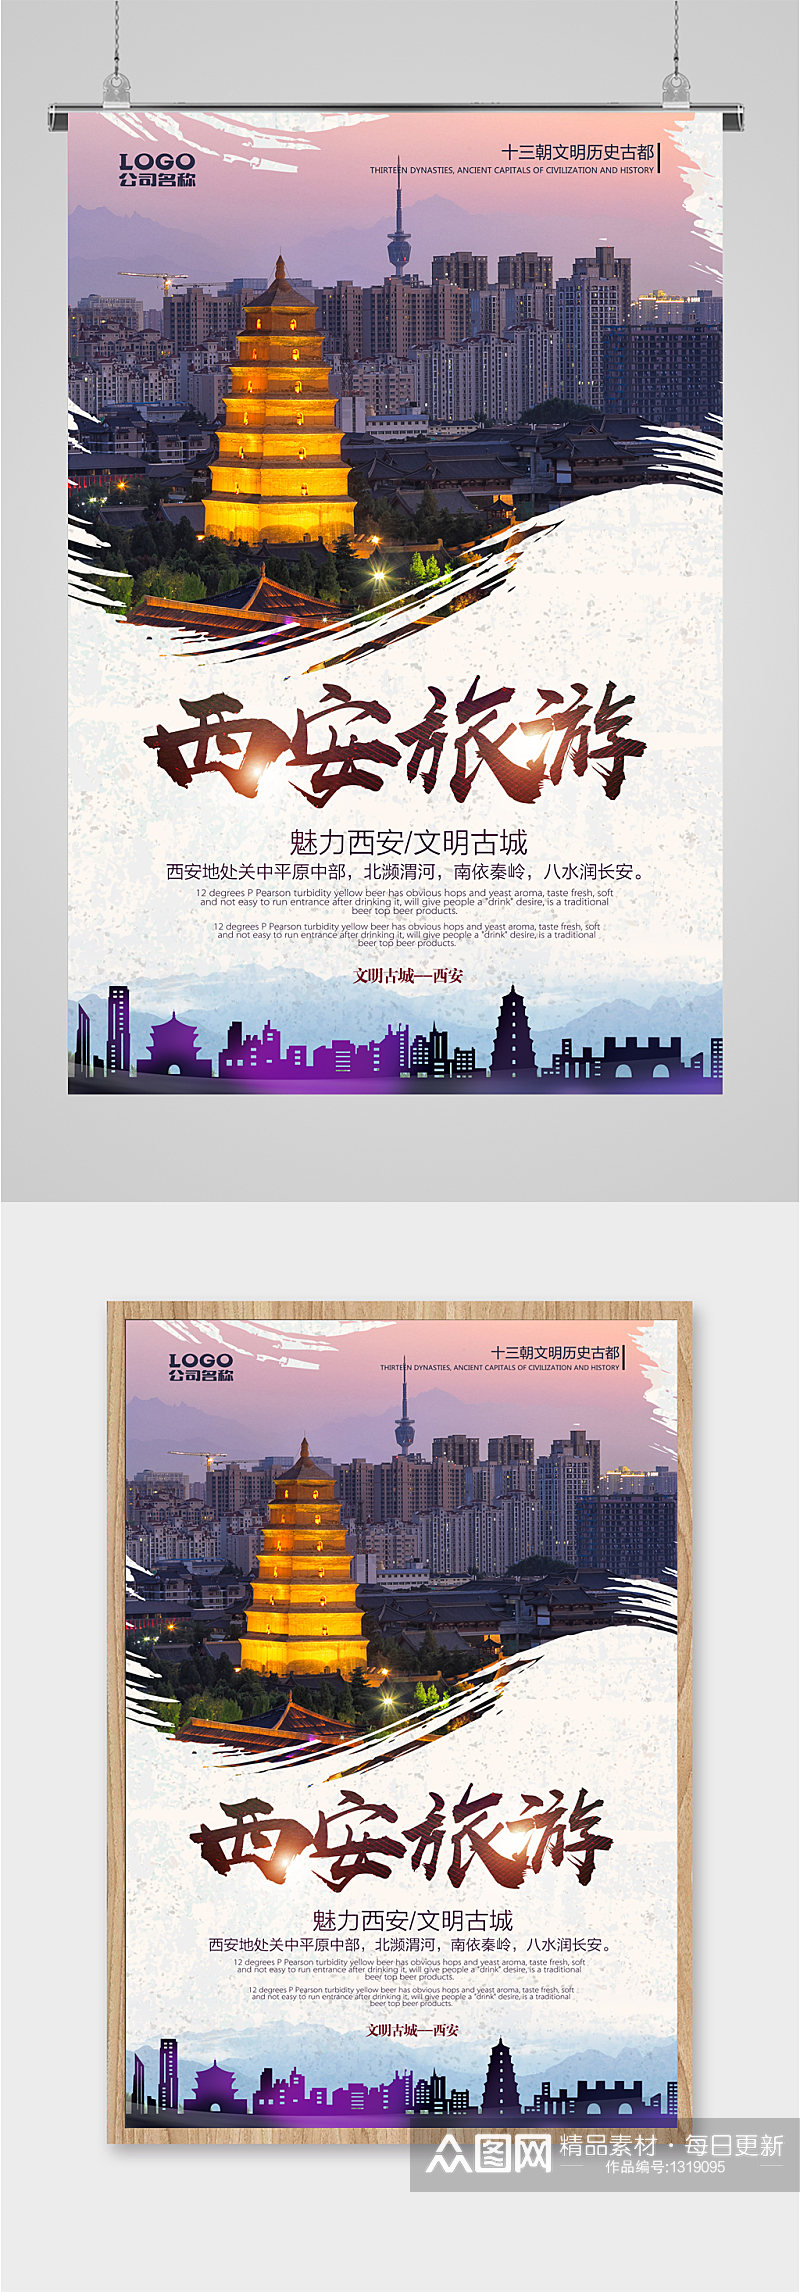 西安旅游旅行社海报素材